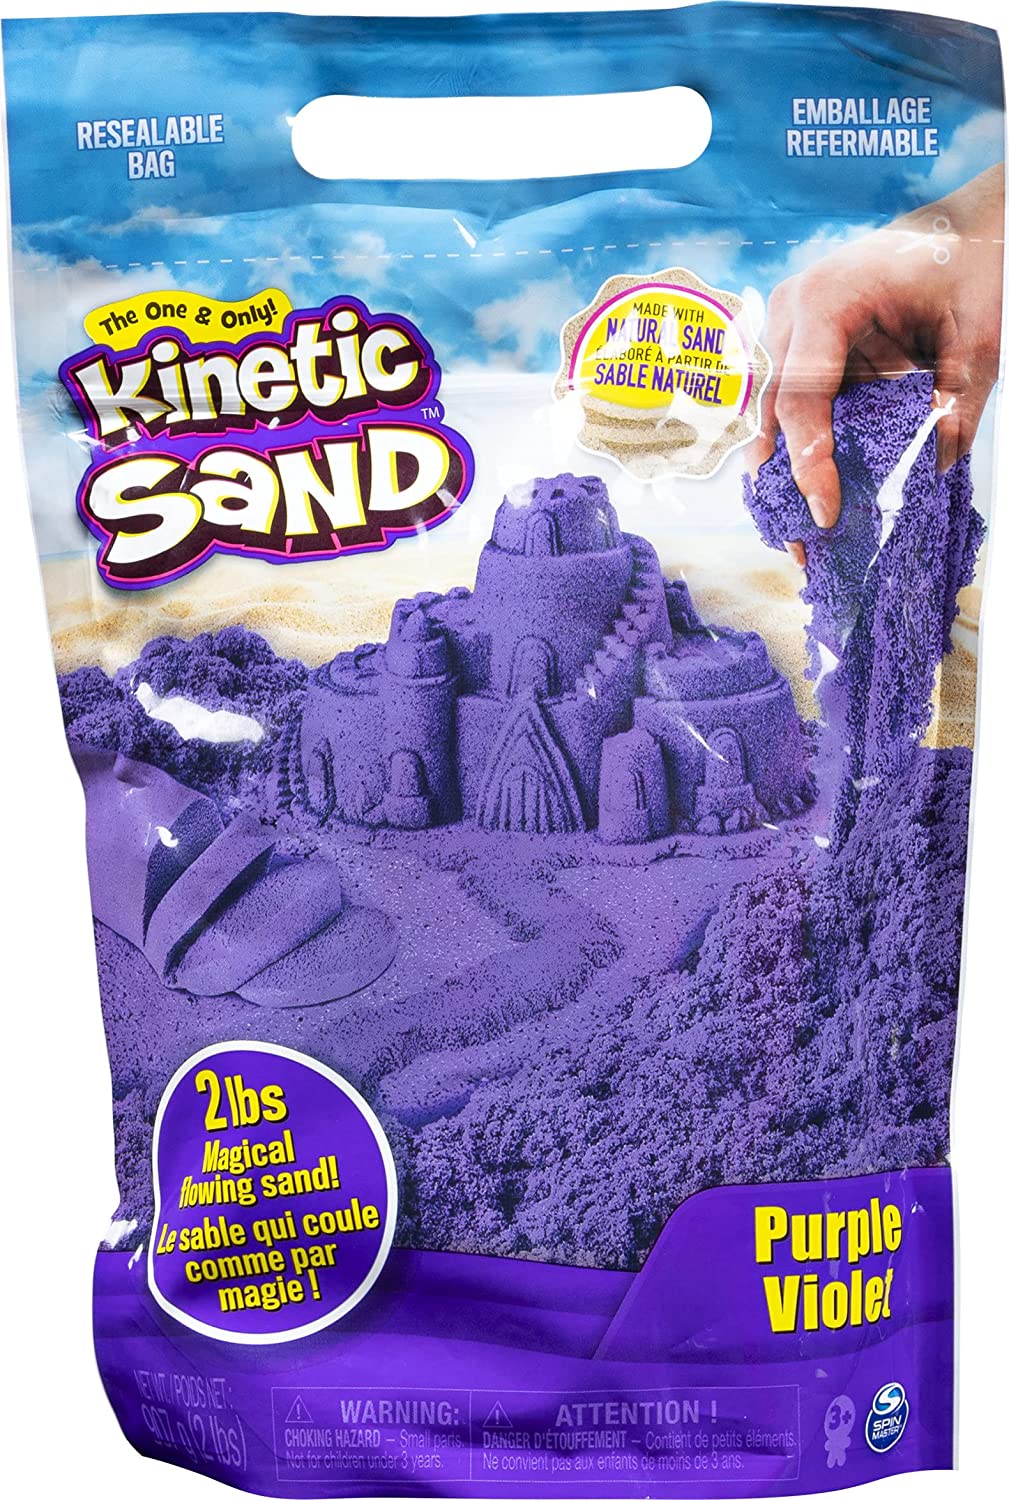 Kinetic Sand 2lb Bag - Colored